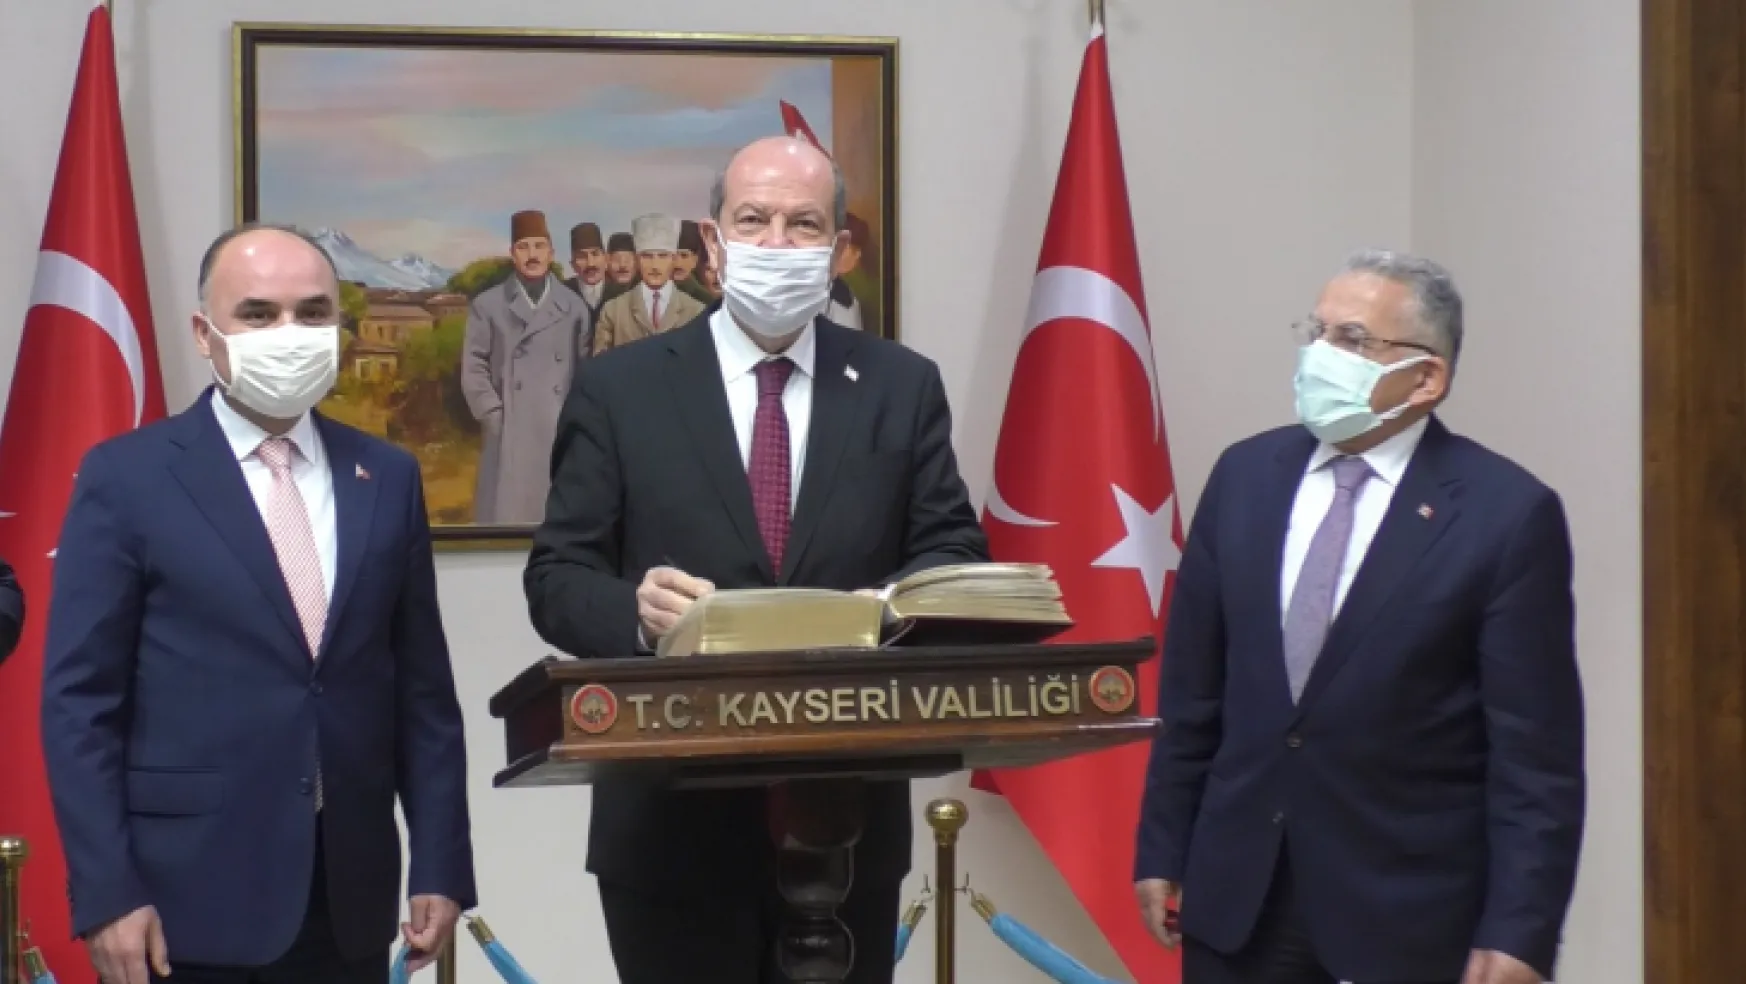 KKTC Cumhurbaşkanı Ersin Tatar Kayseri'de